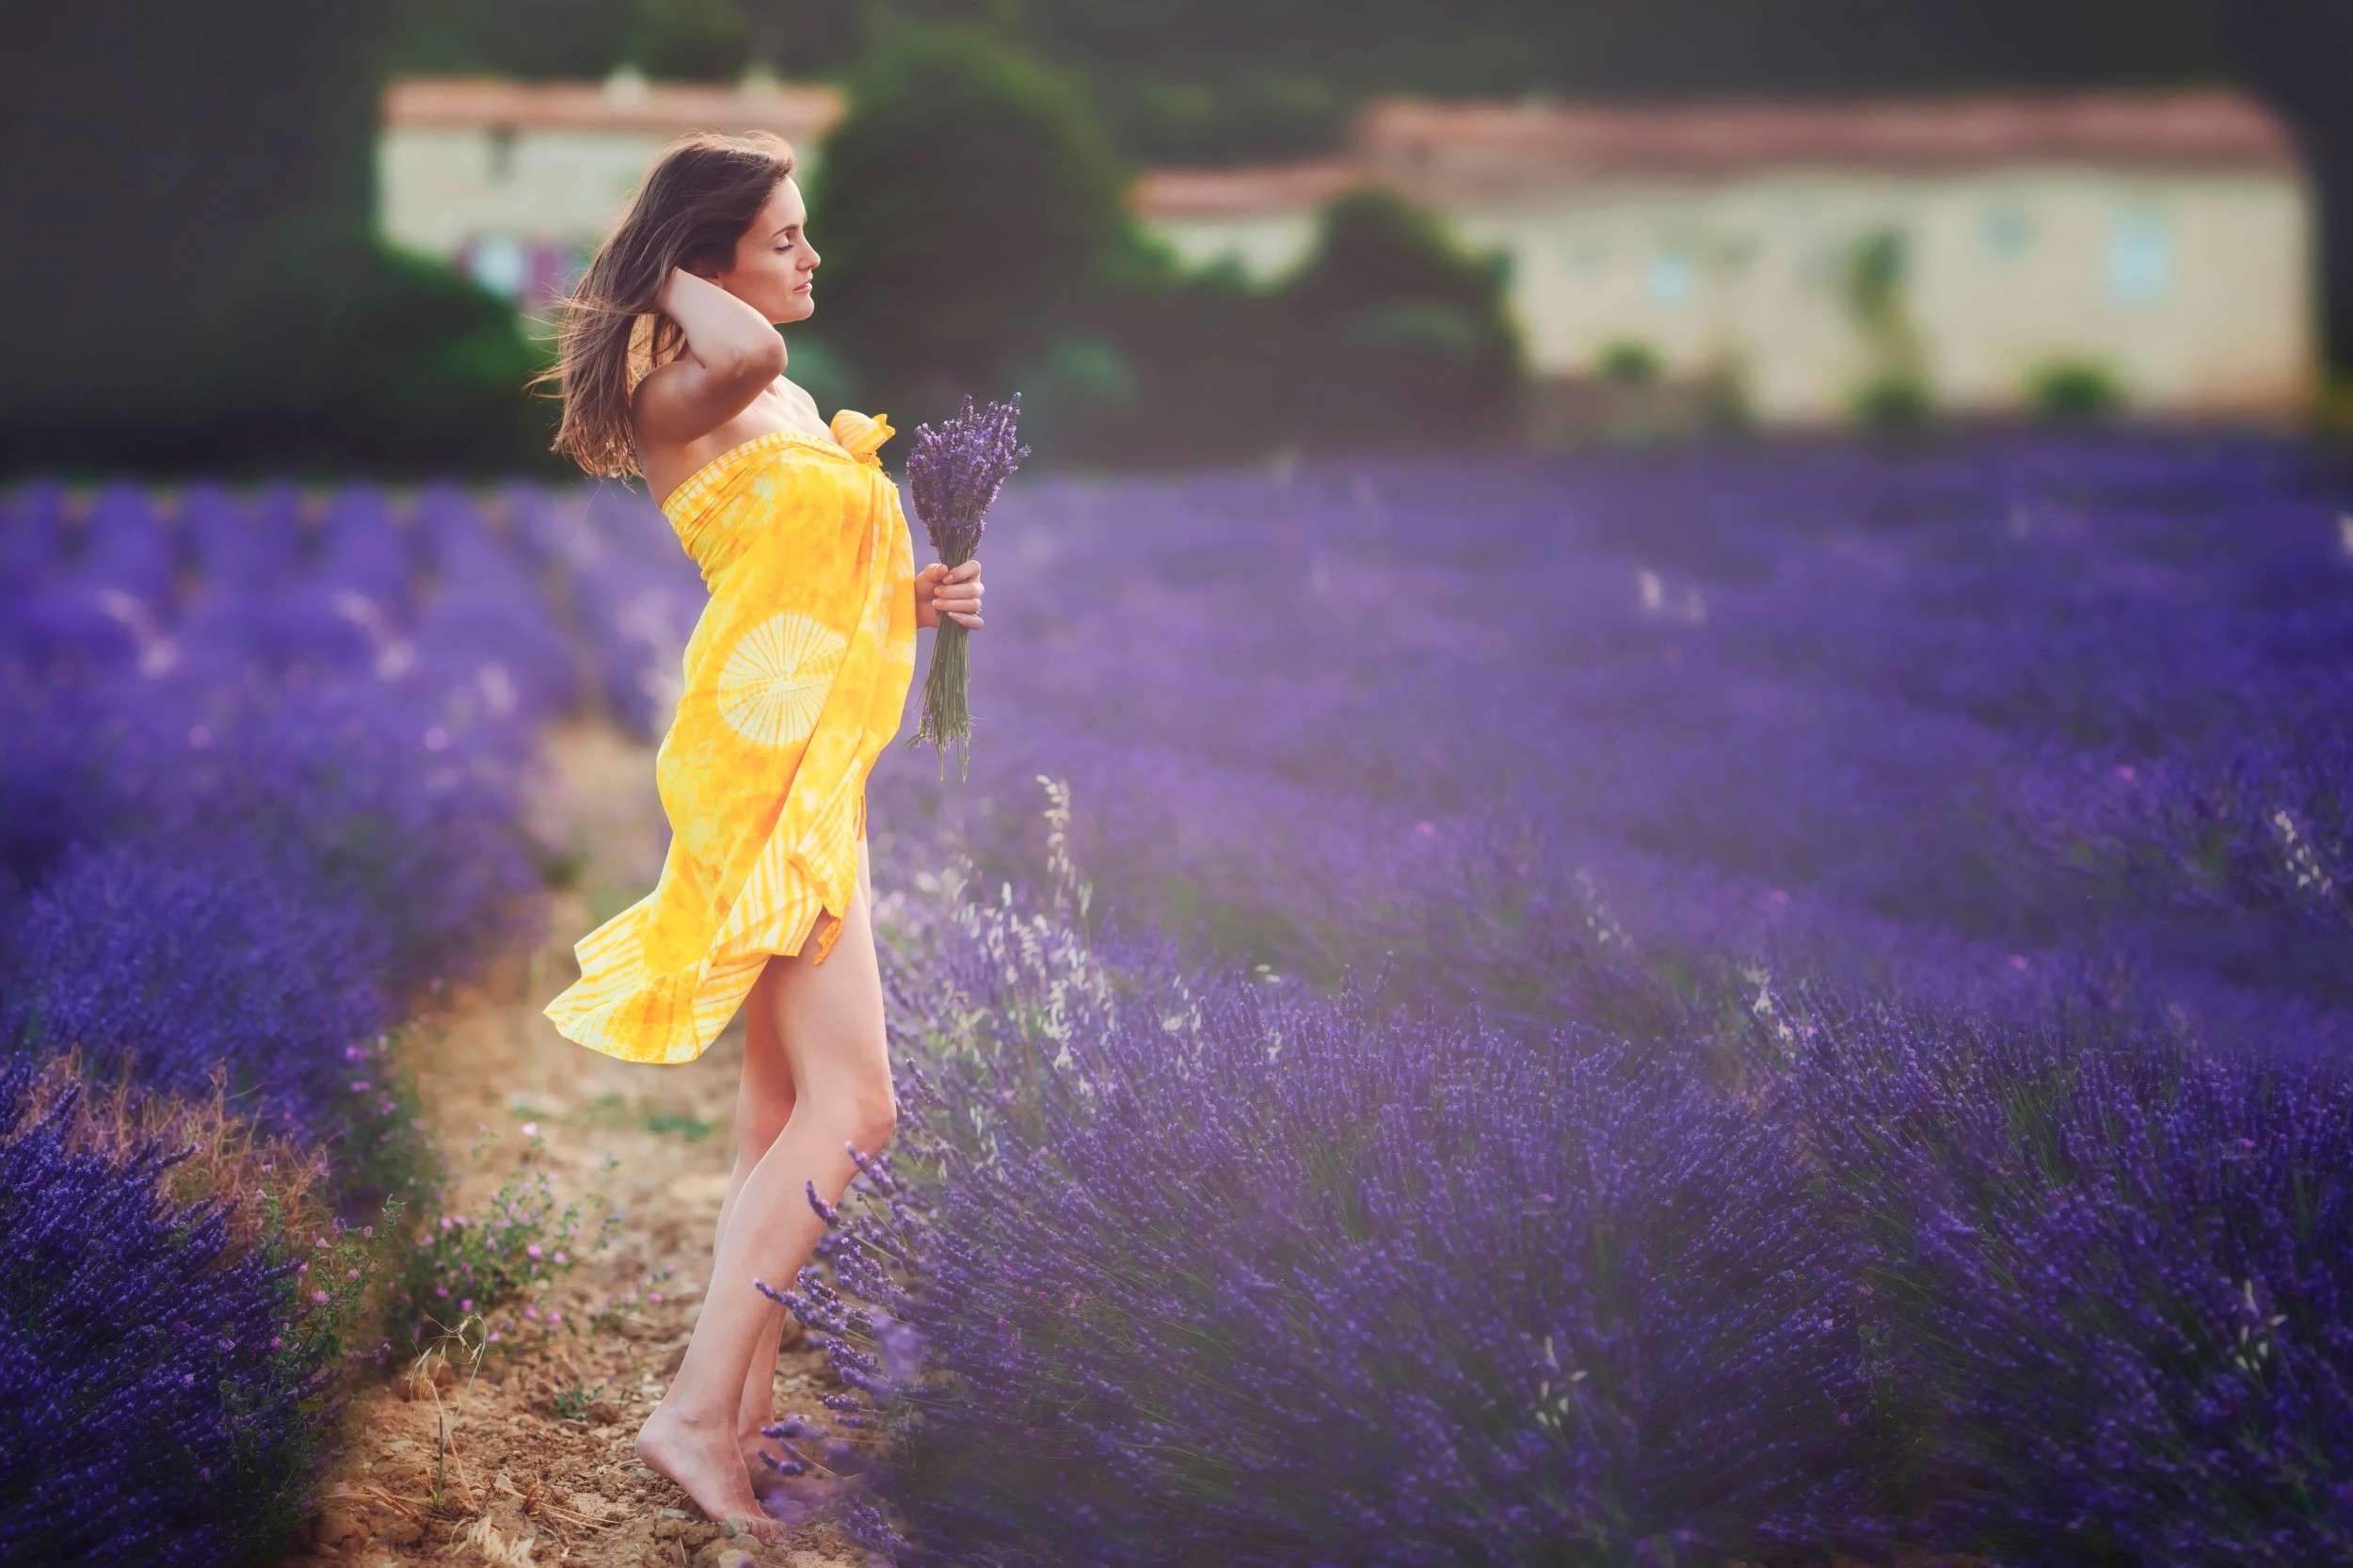 women, Brunette, Women Outdoors, Field, Flowers, Lavender, Yellow Dress, Purple Flowers Wallpaper